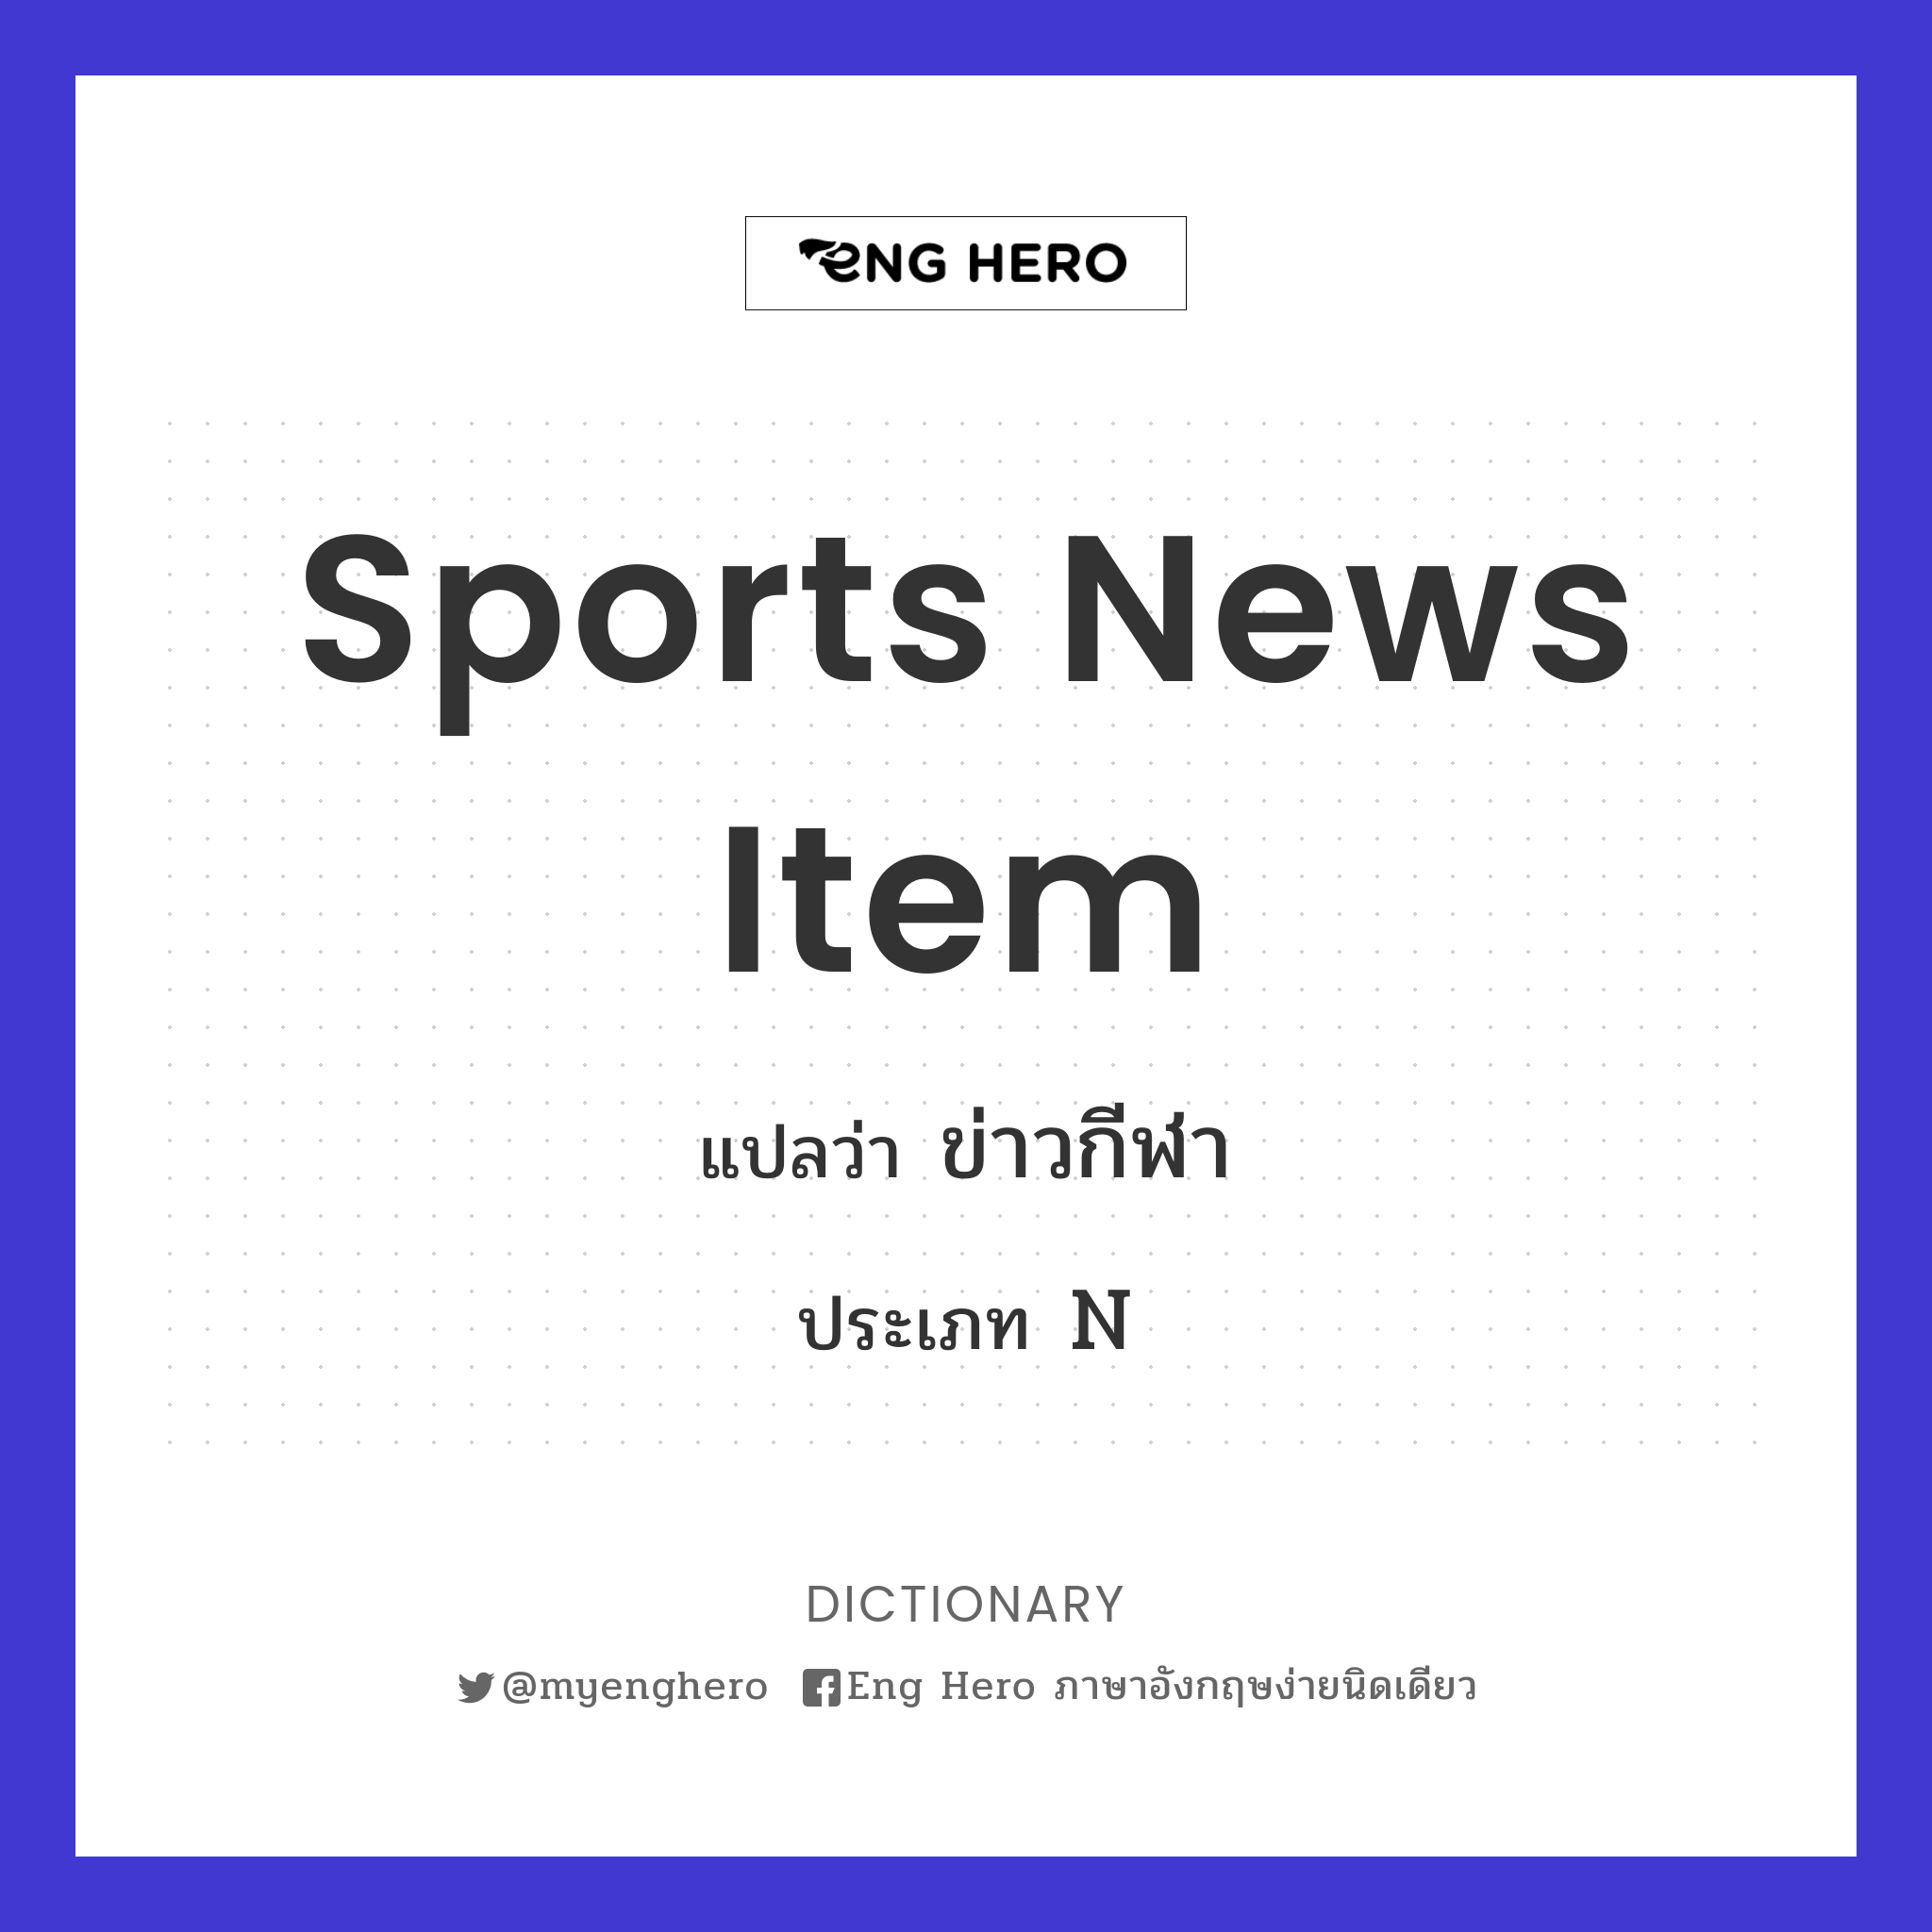 sports news item